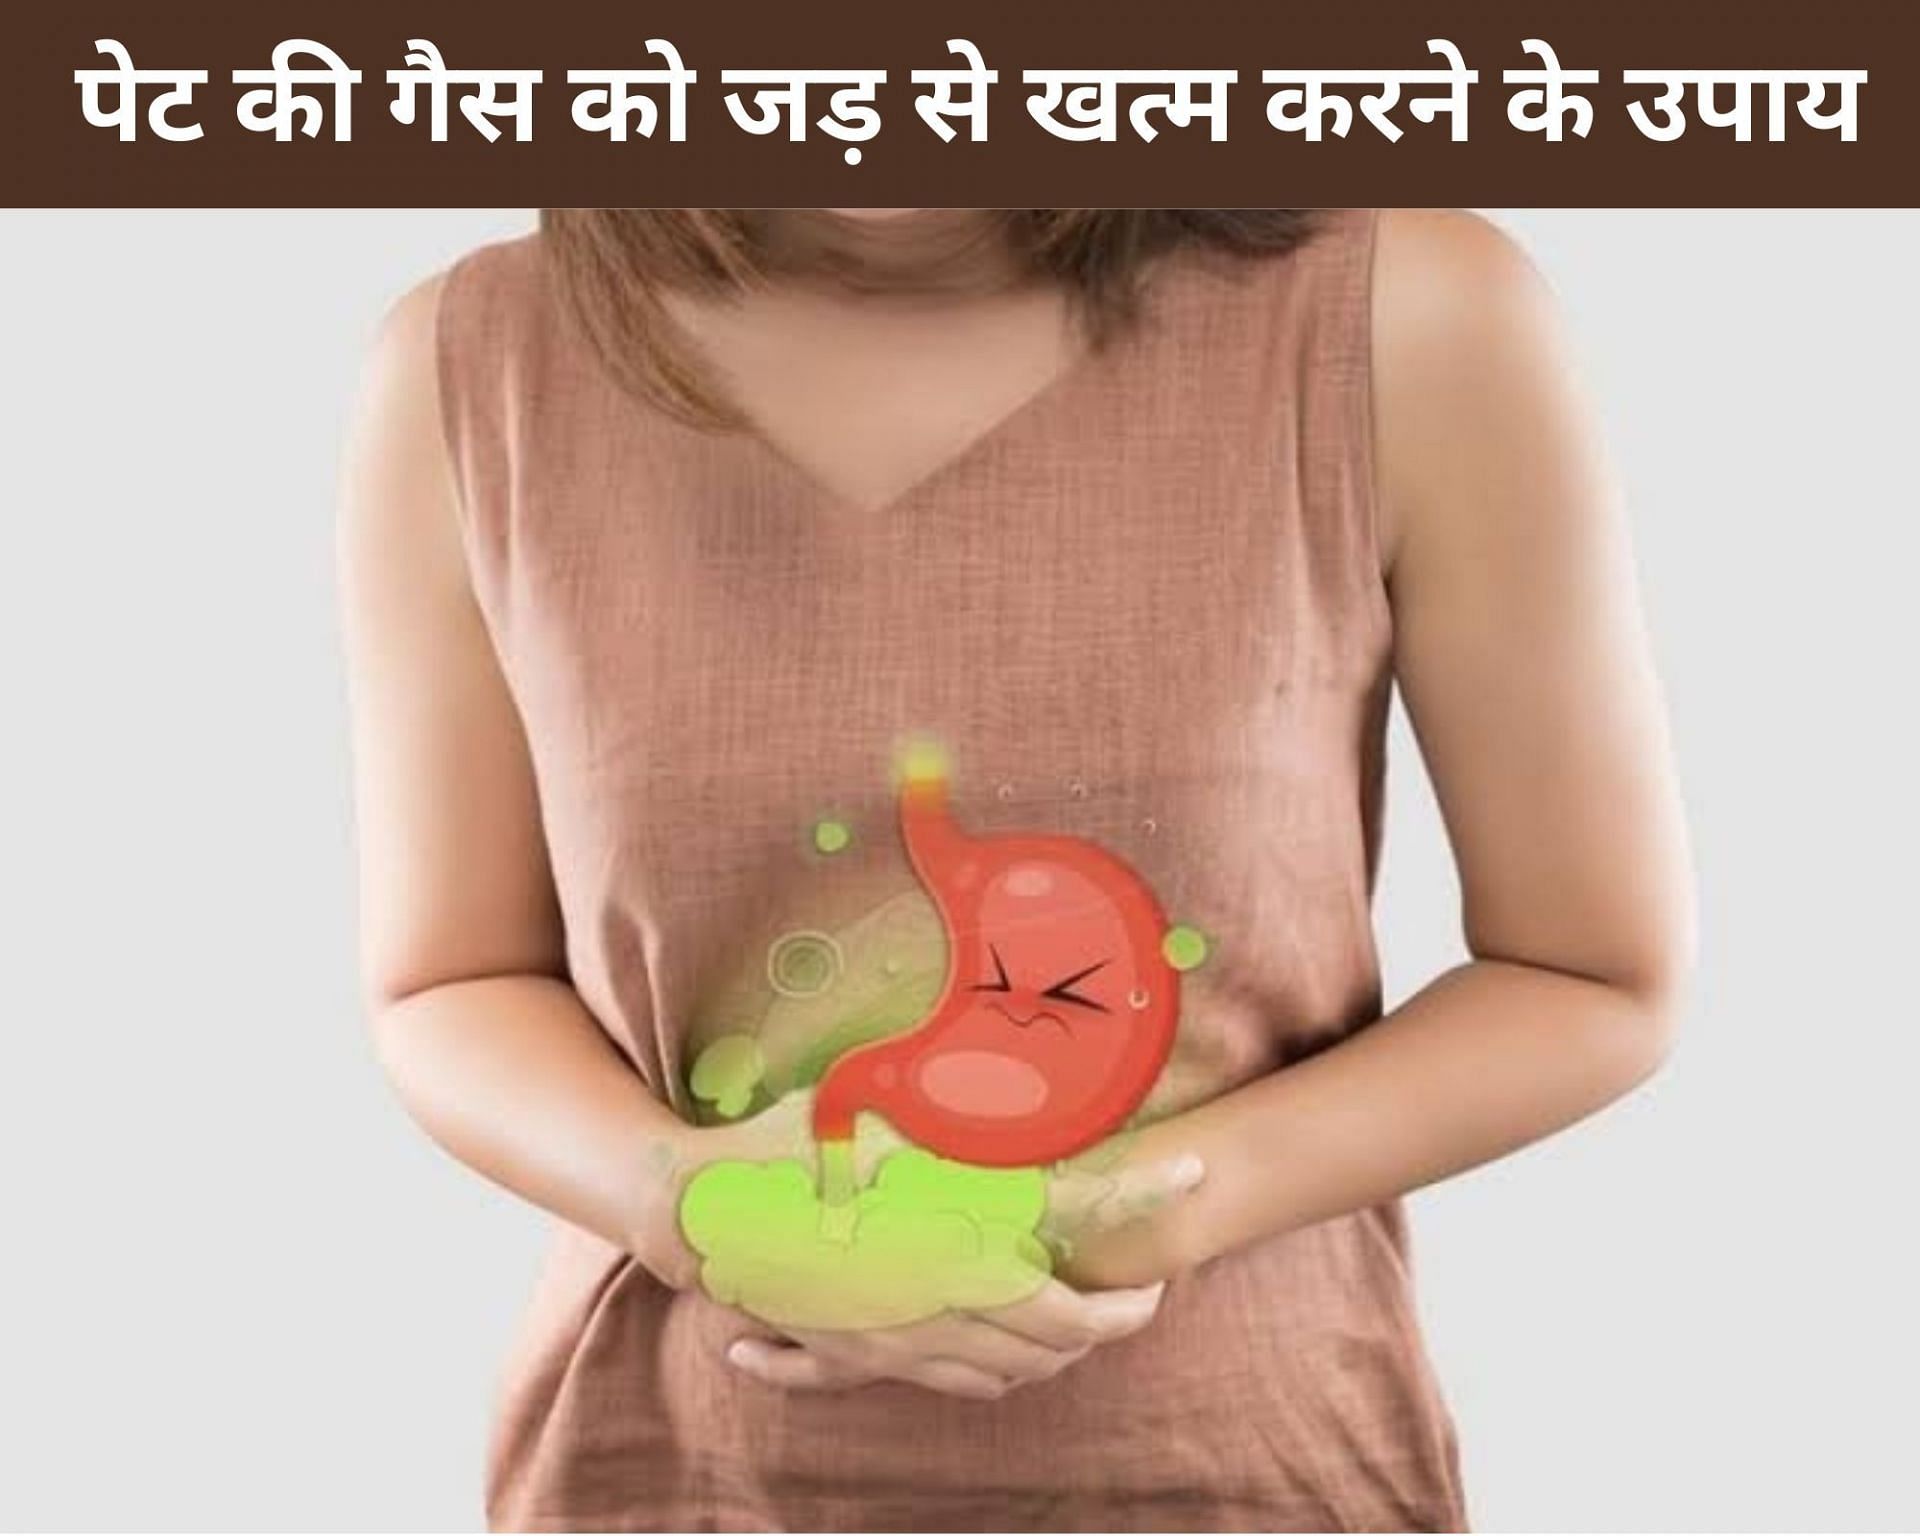 पेट की गैस को जड़ से खत्म करने के उपाय (sportskeeda Hindi) 